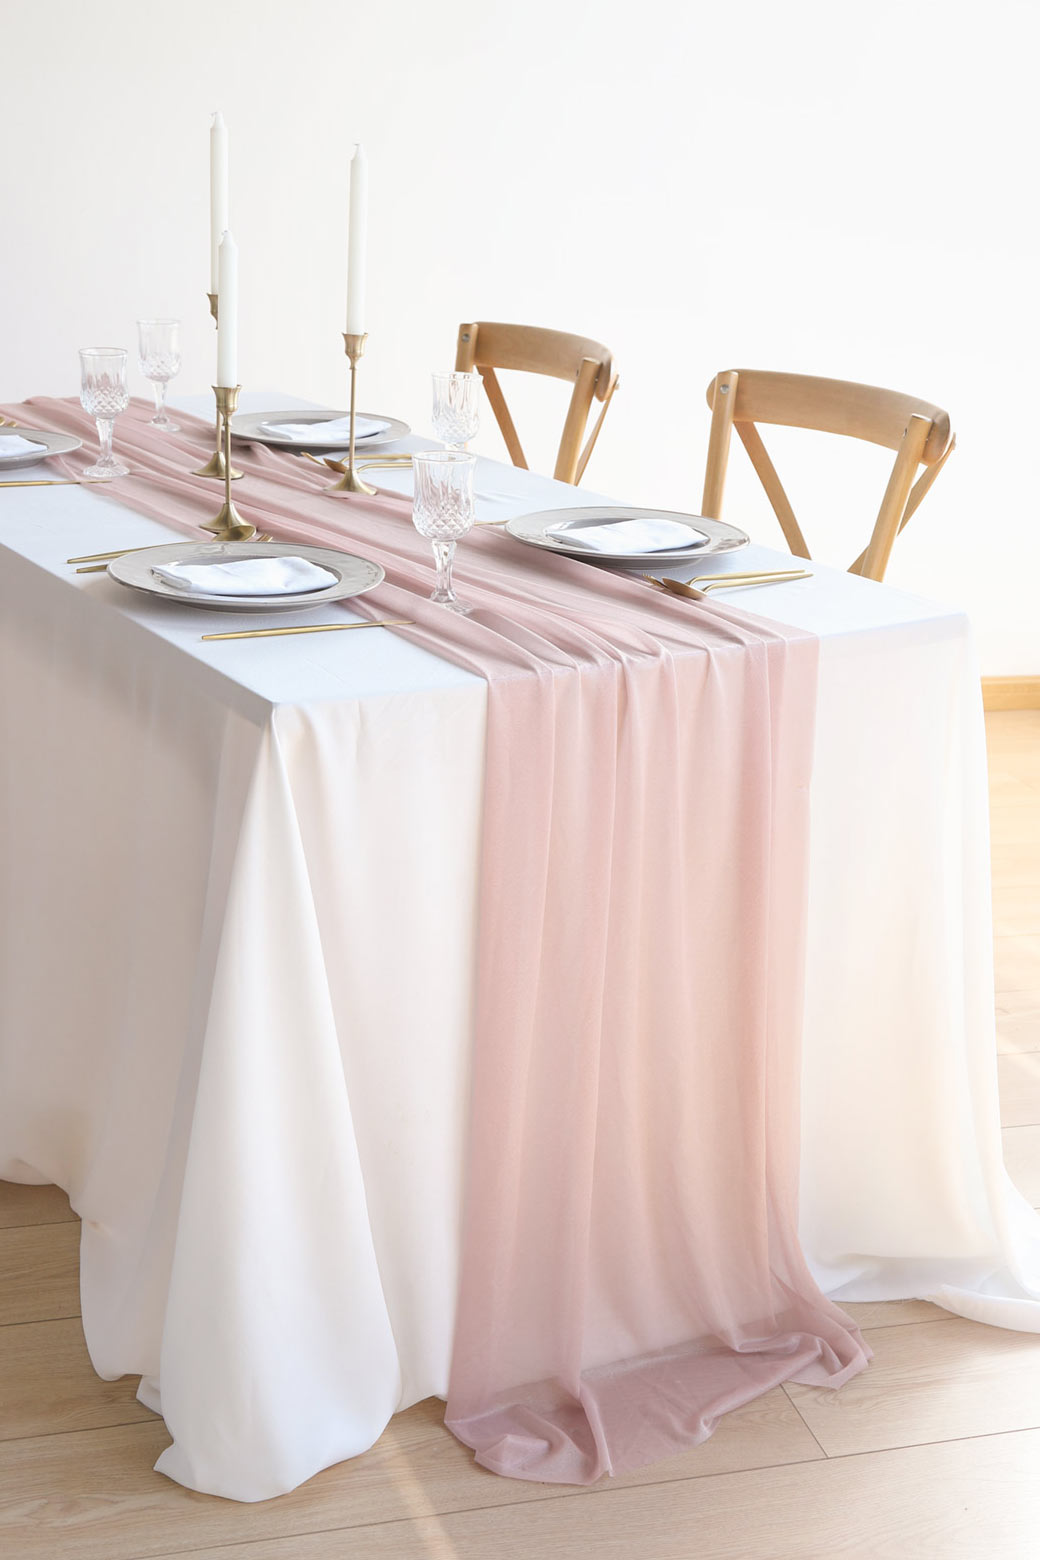 Wedding Reception & Altar Decor, Chiffon Wedding Table Runner 29"w x 10ft- Dusty Pink